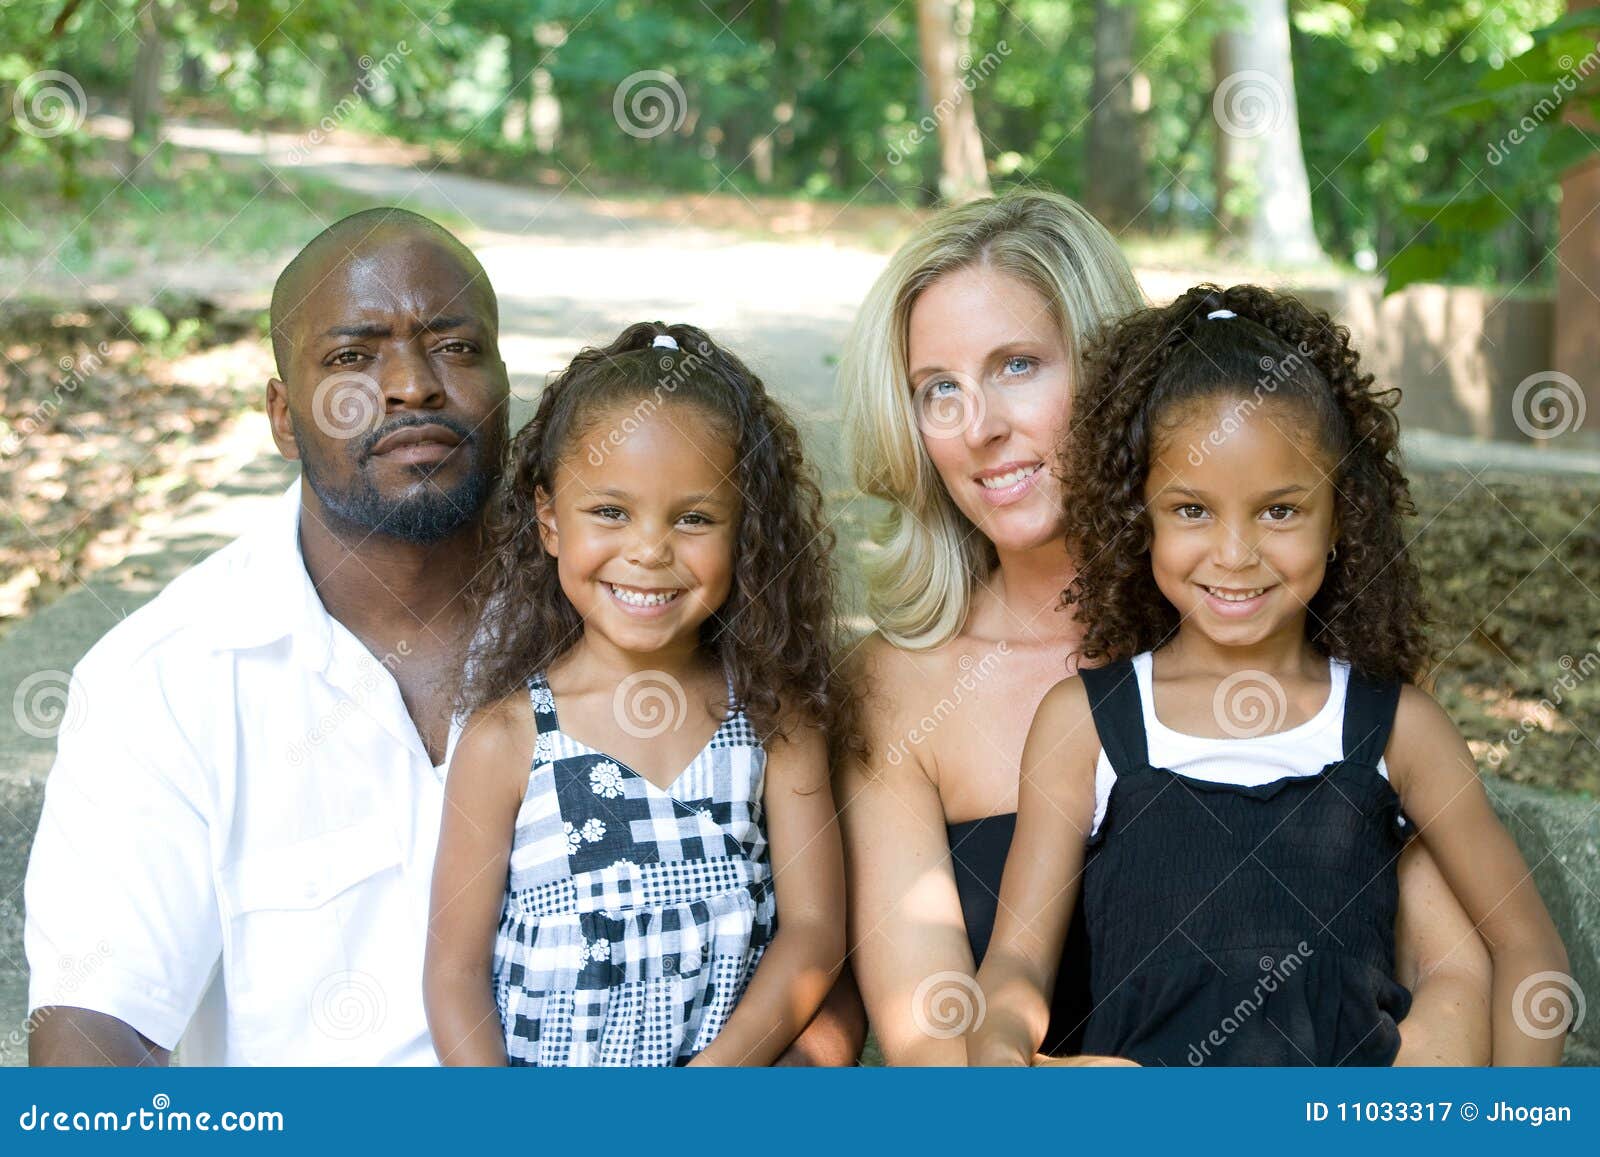 a loving mixed race family